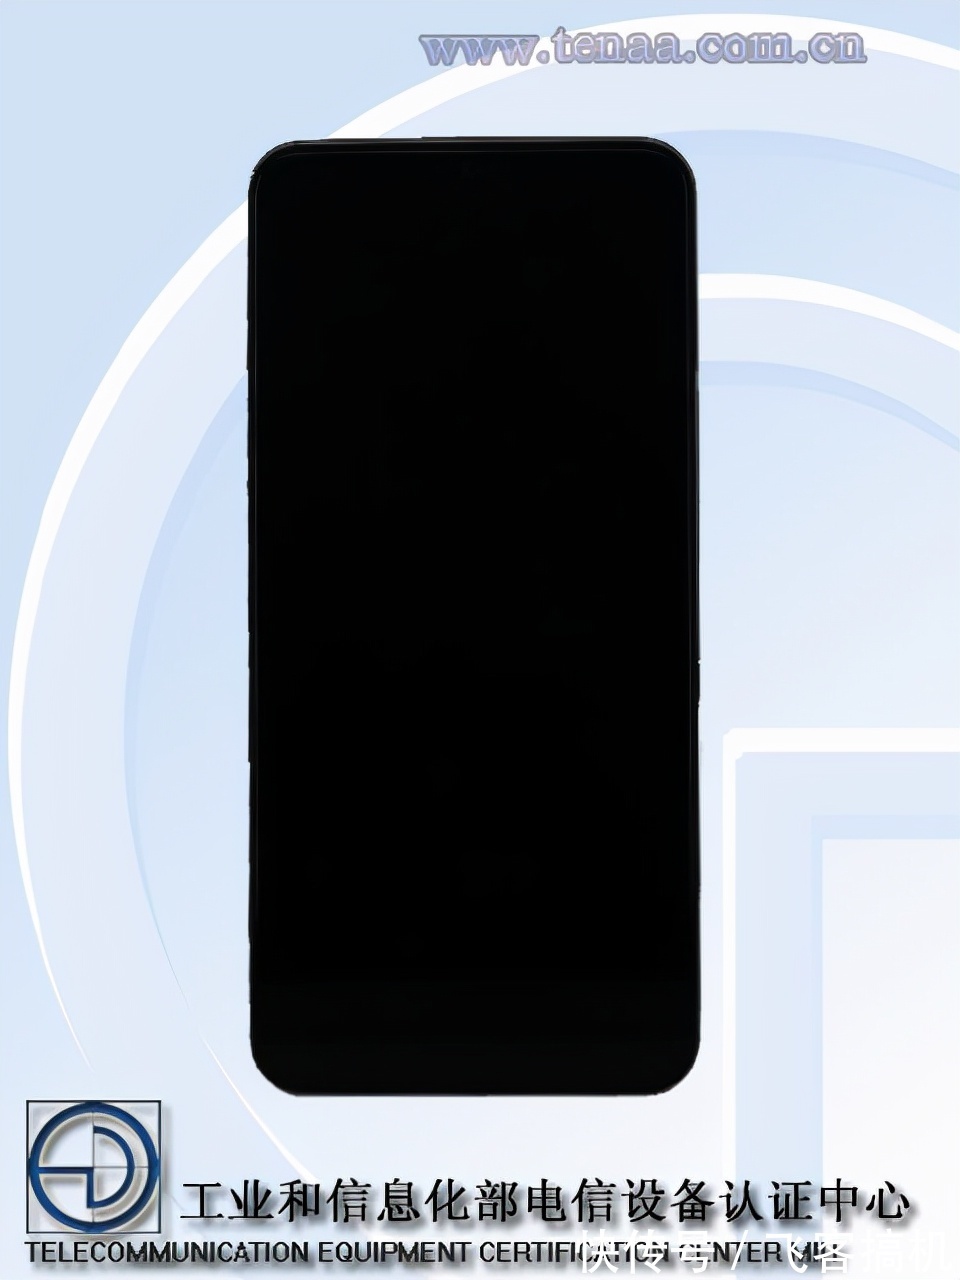 5g|iQOO Z5x 5G通过工信部认证，主打千元5G的性价比手机